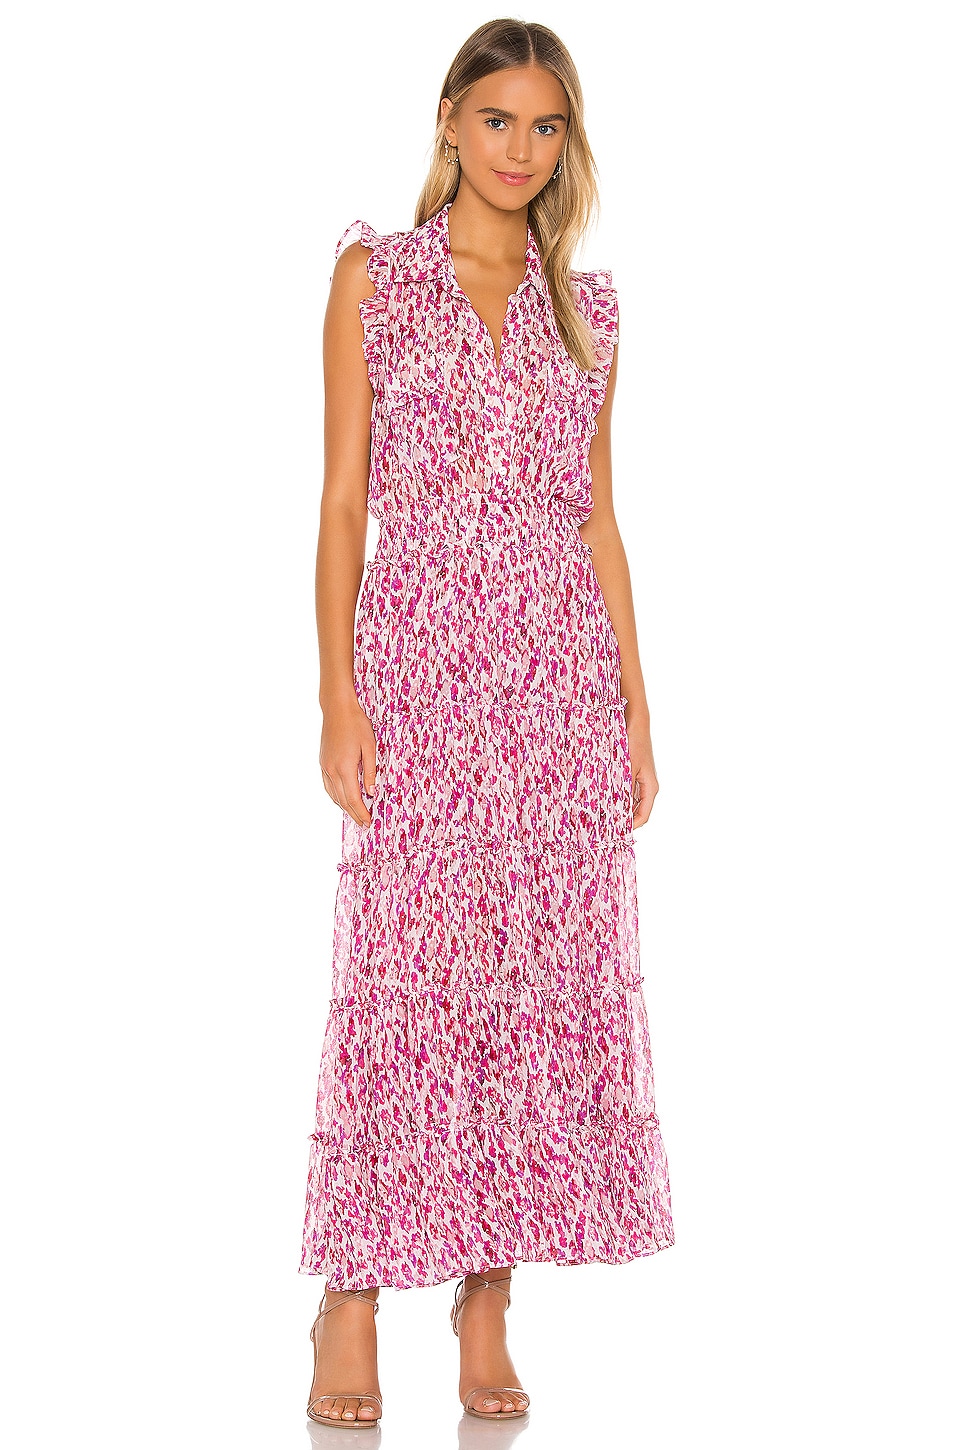 MISA Los Angeles Trina Dress in Fuchsia | REVOLVE